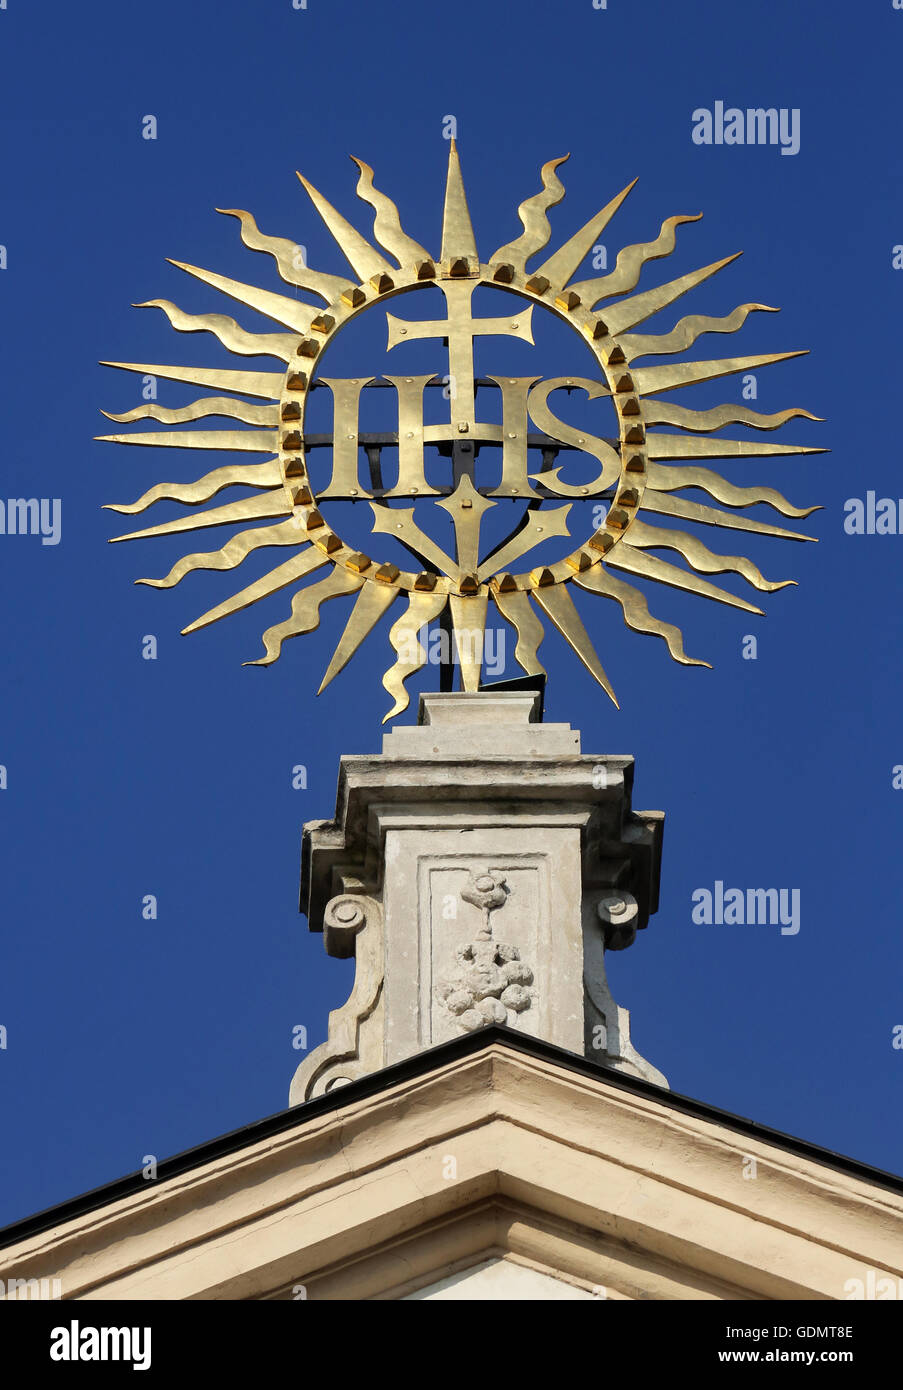 IHS-Zeichen auf barocke Jesuitenkirche. Die Kirche wurde zwischen 1623 und 1627 gebaut. in Wien, Österreich am 10. Oktober 2014. Stockfoto